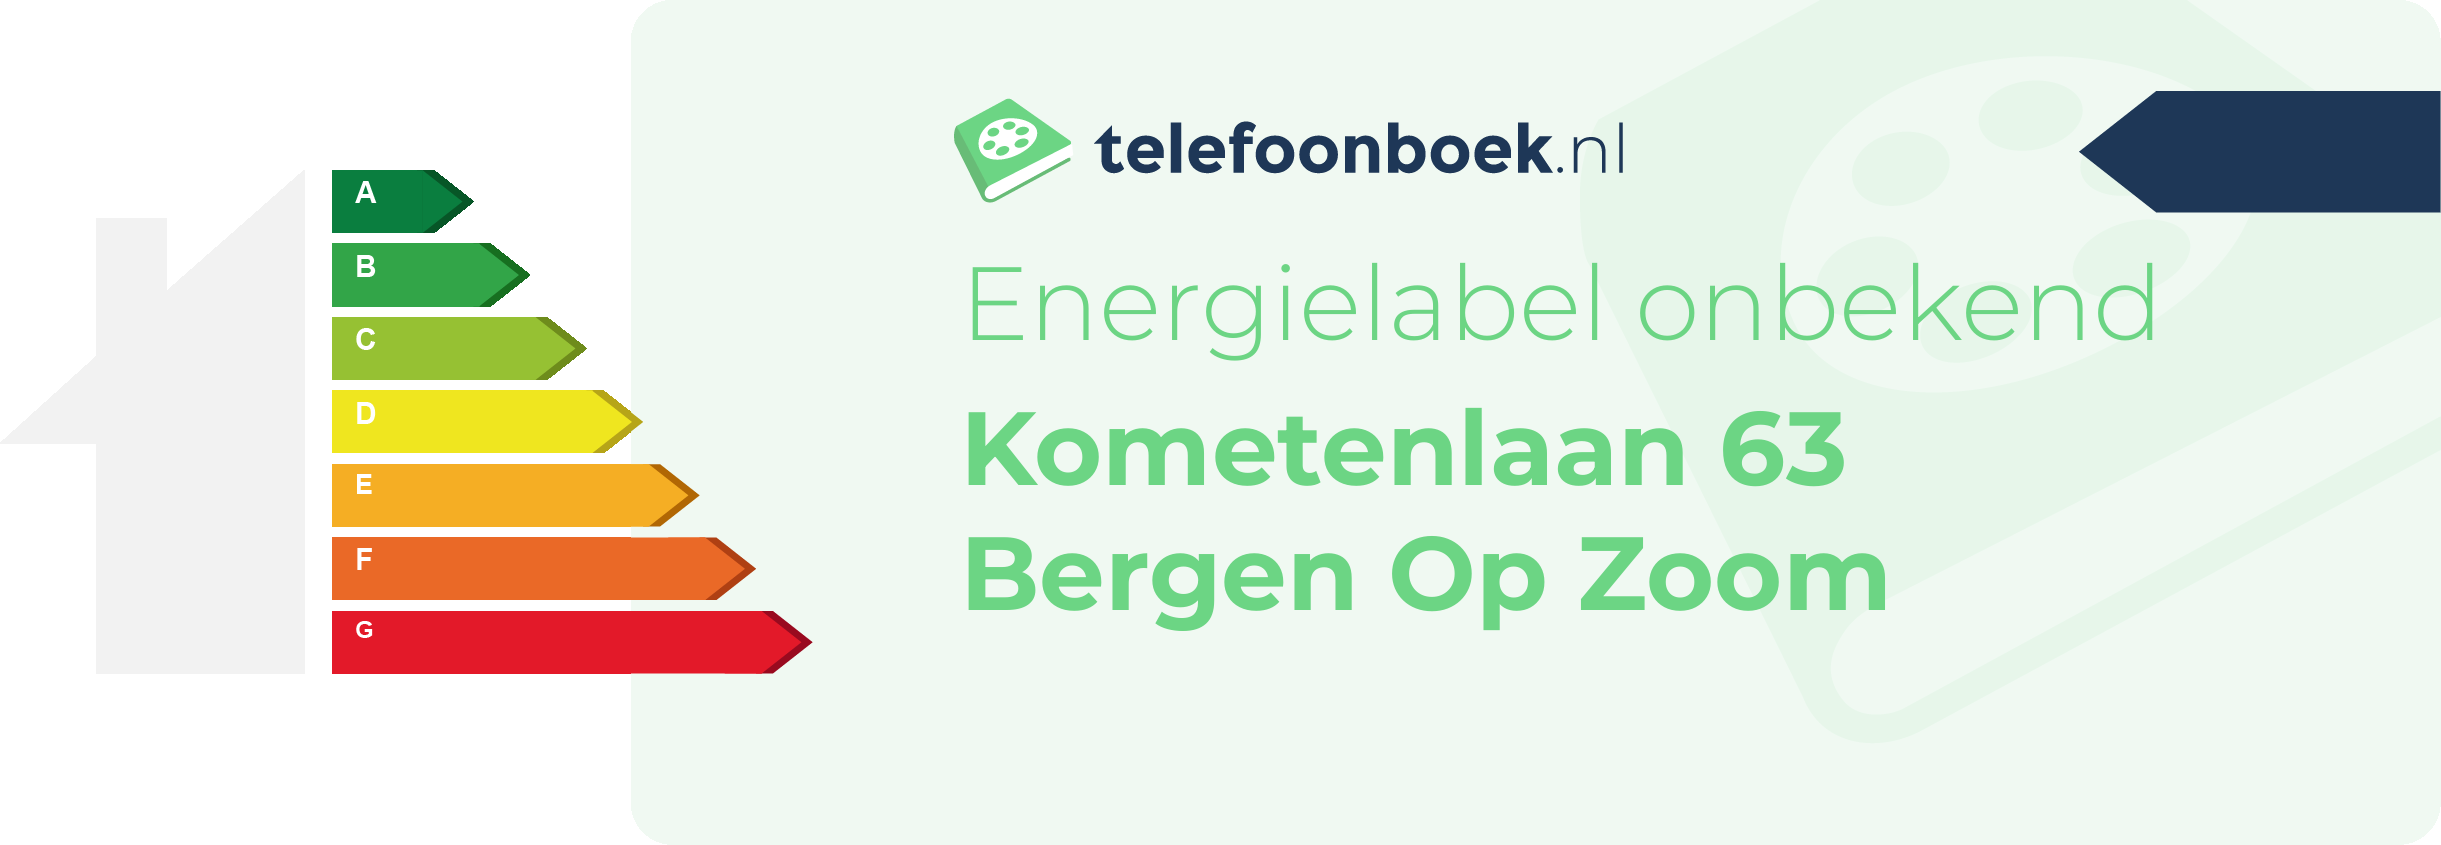 Energielabel Kometenlaan 63 Bergen Op Zoom